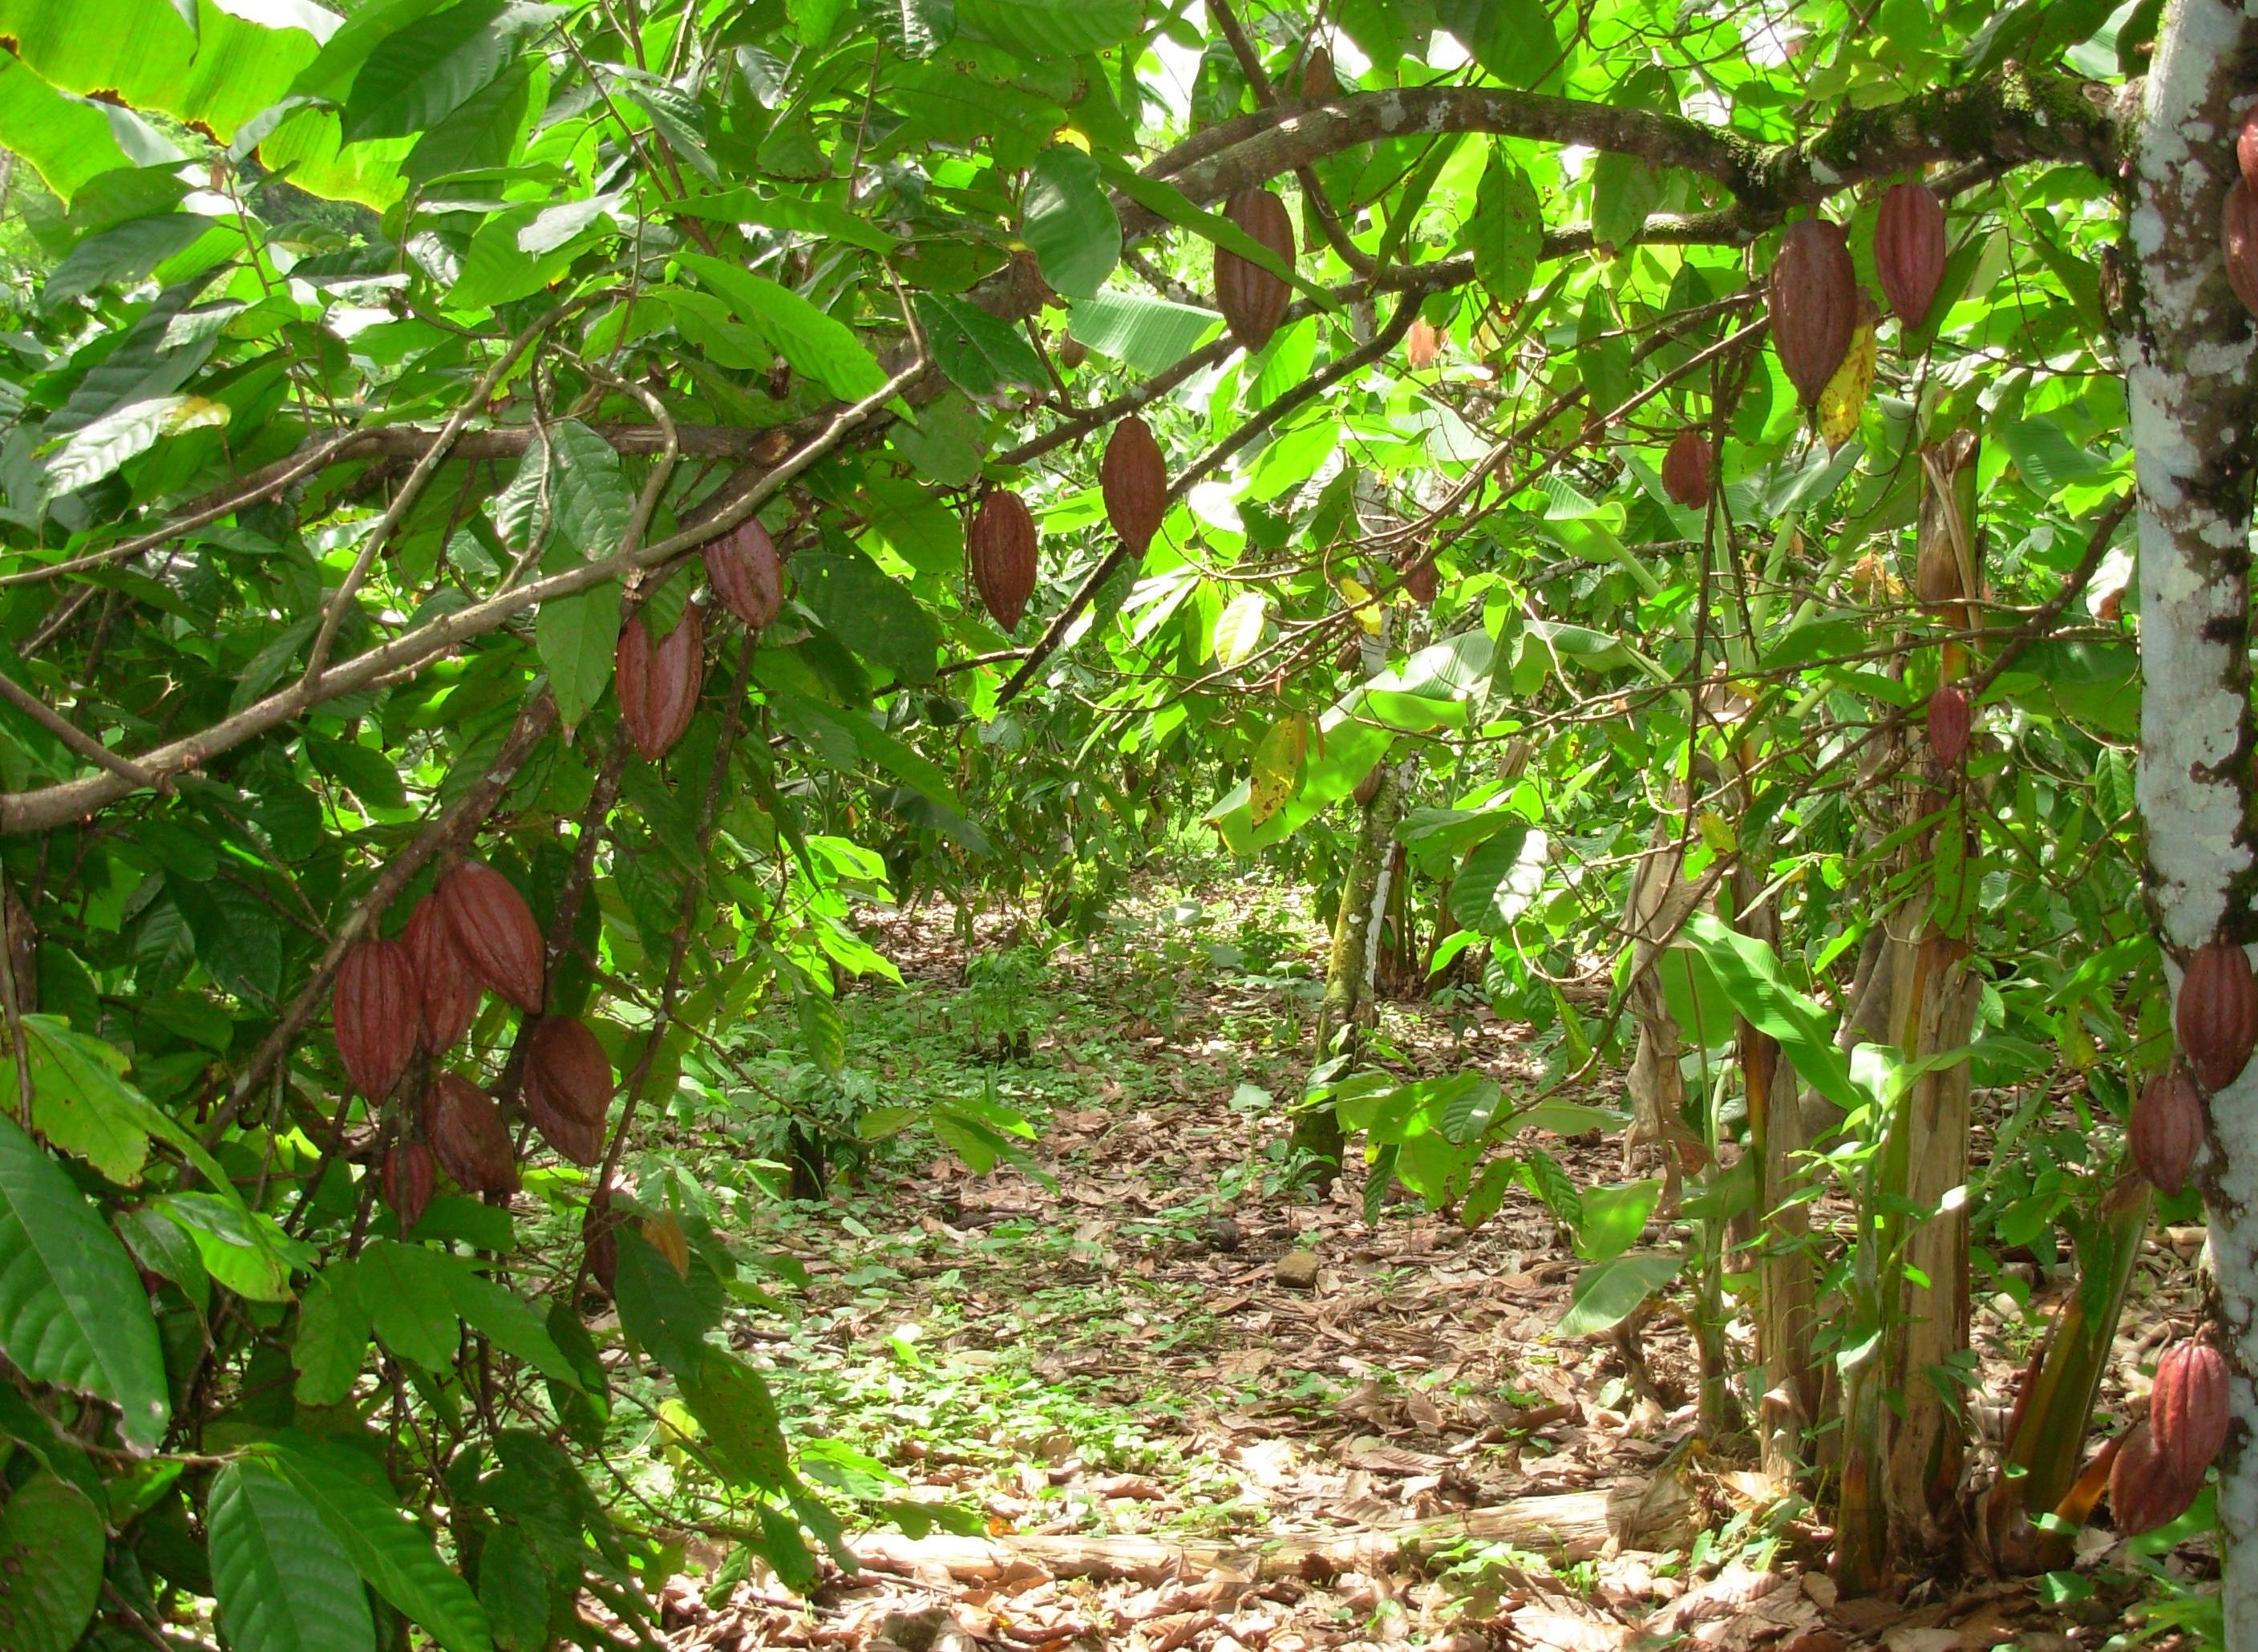 Le but du projet est d'améliorer le système de production du cacao à travers une approche agroécologique multidisciplinaire